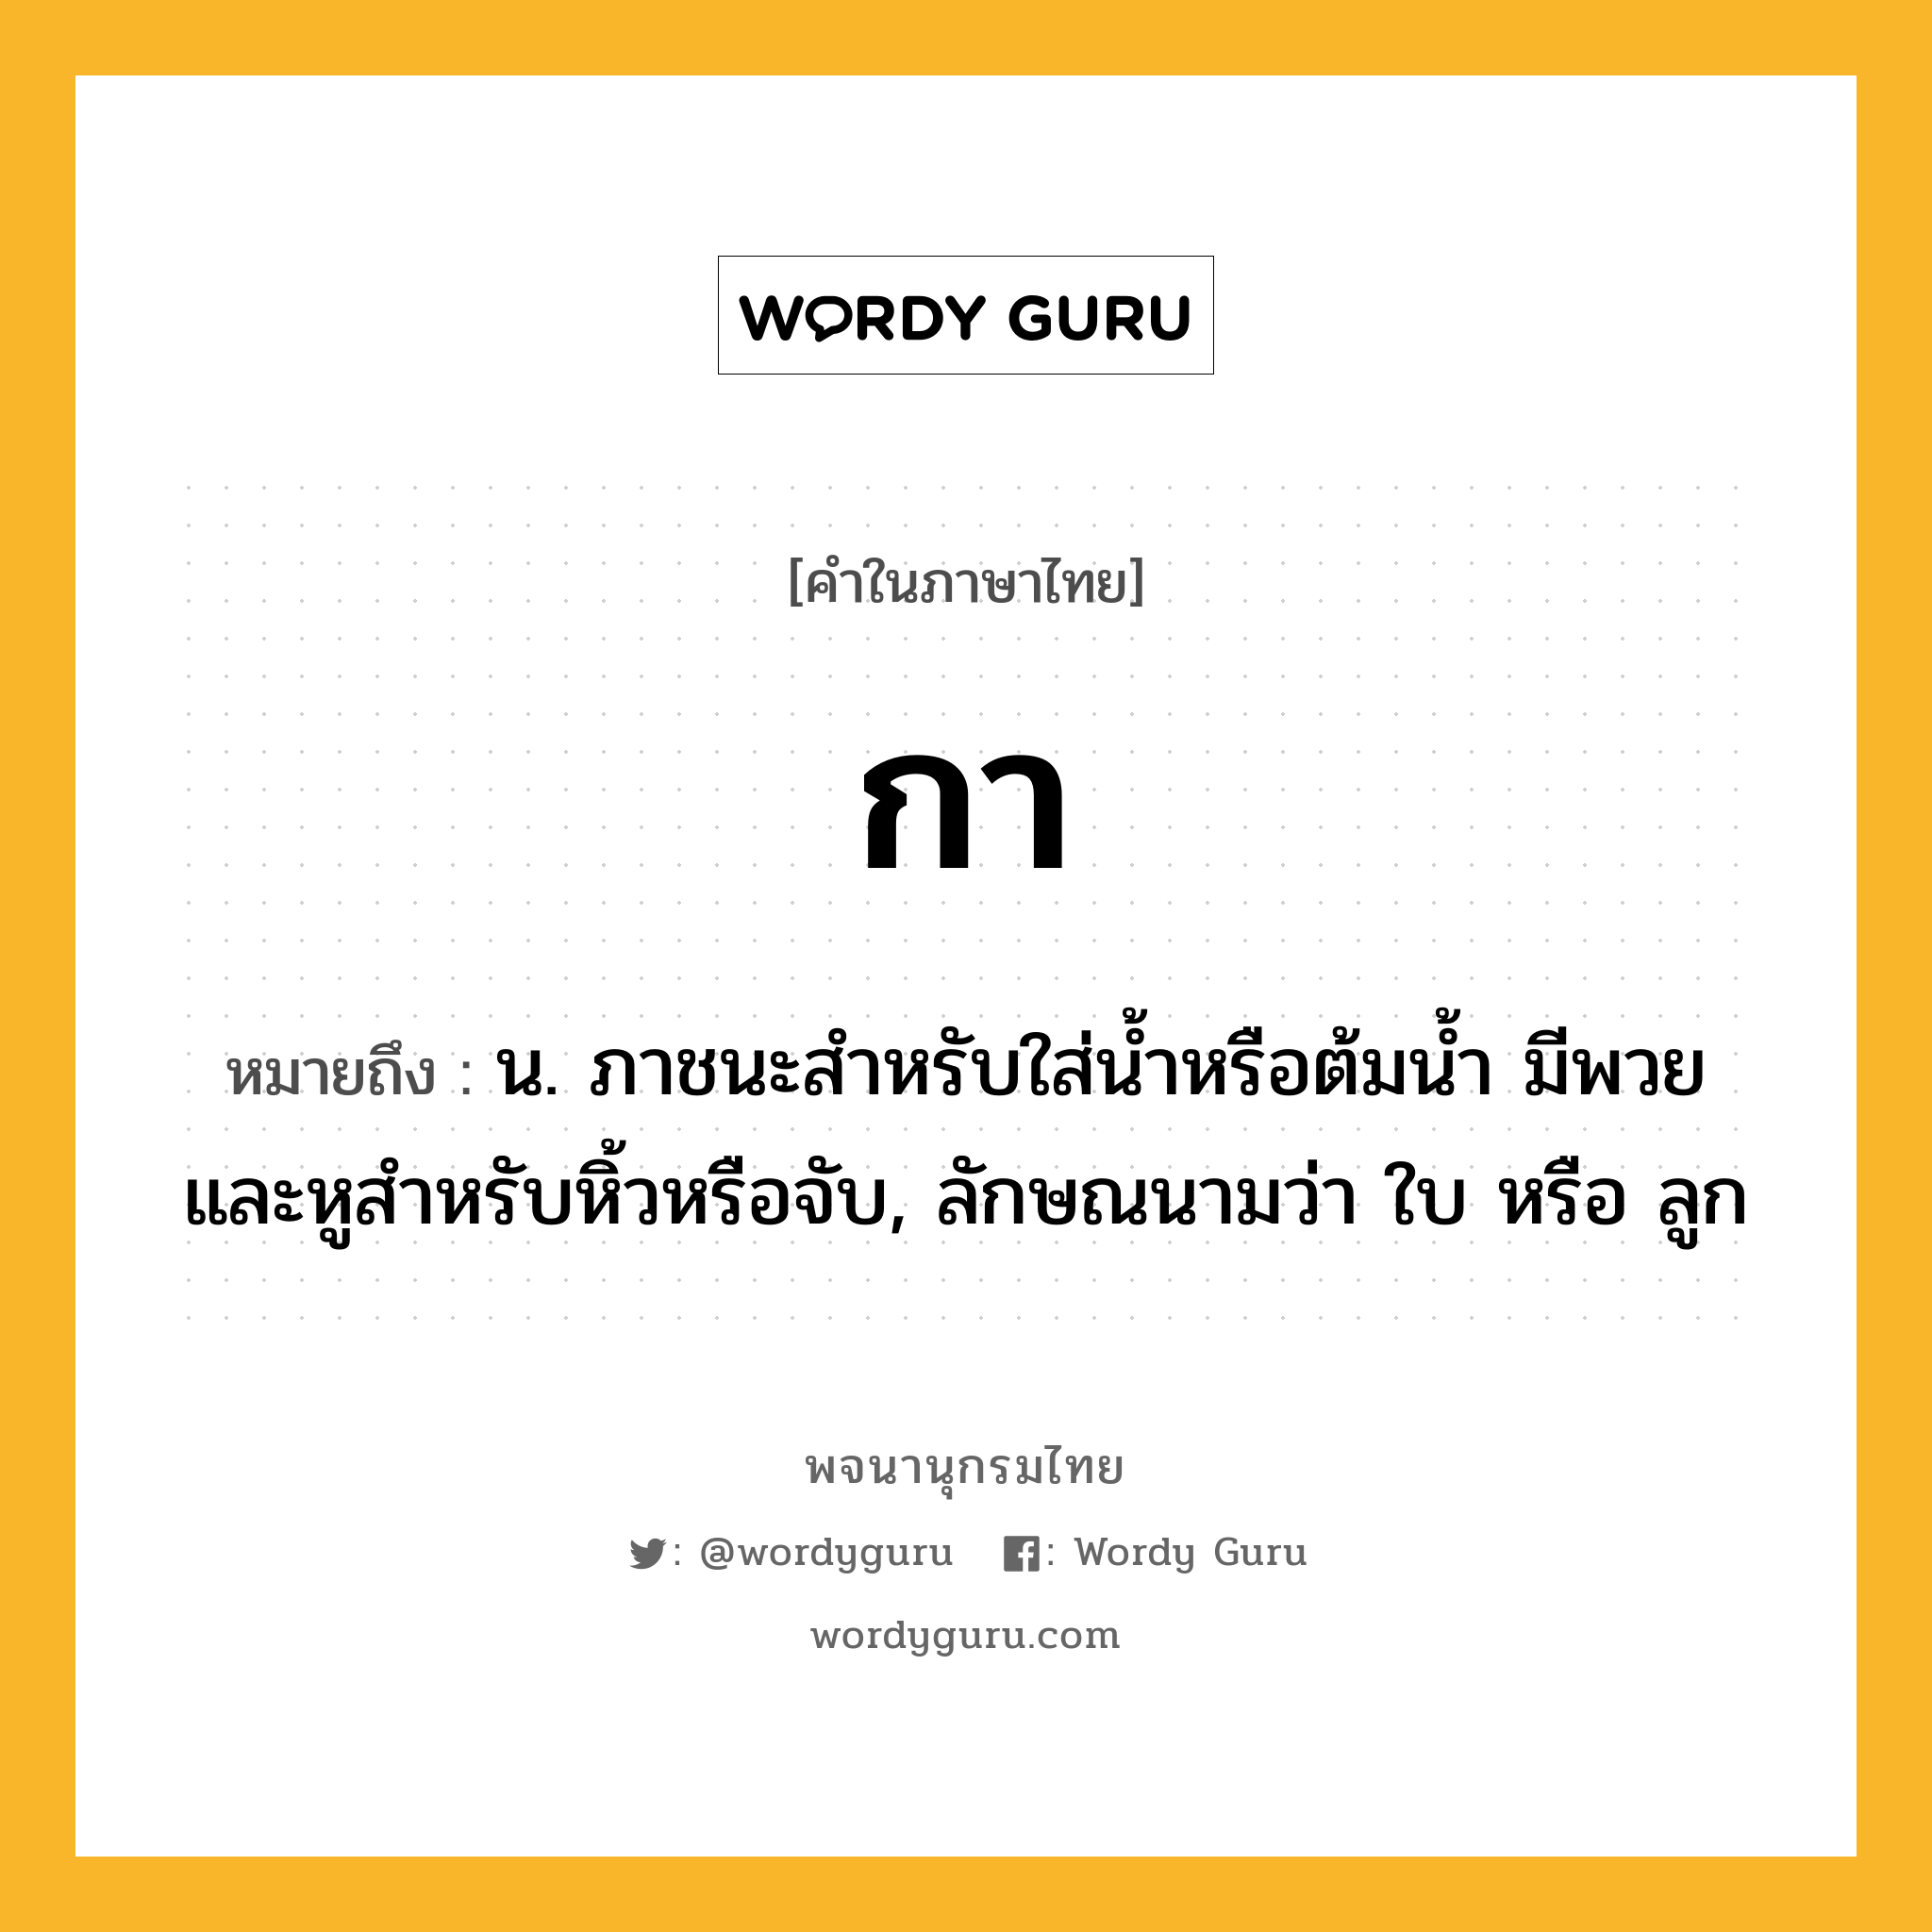 กา ความหมาย หมายถึงอะไร?, คำในภาษาไทย กา หมายถึง น. ภาชนะสําหรับใส่นํ้าหรือต้มนํ้า มีพวยและหูสําหรับหิ้วหรือจับ, ลักษณนามว่า ใบ หรือ ลูก